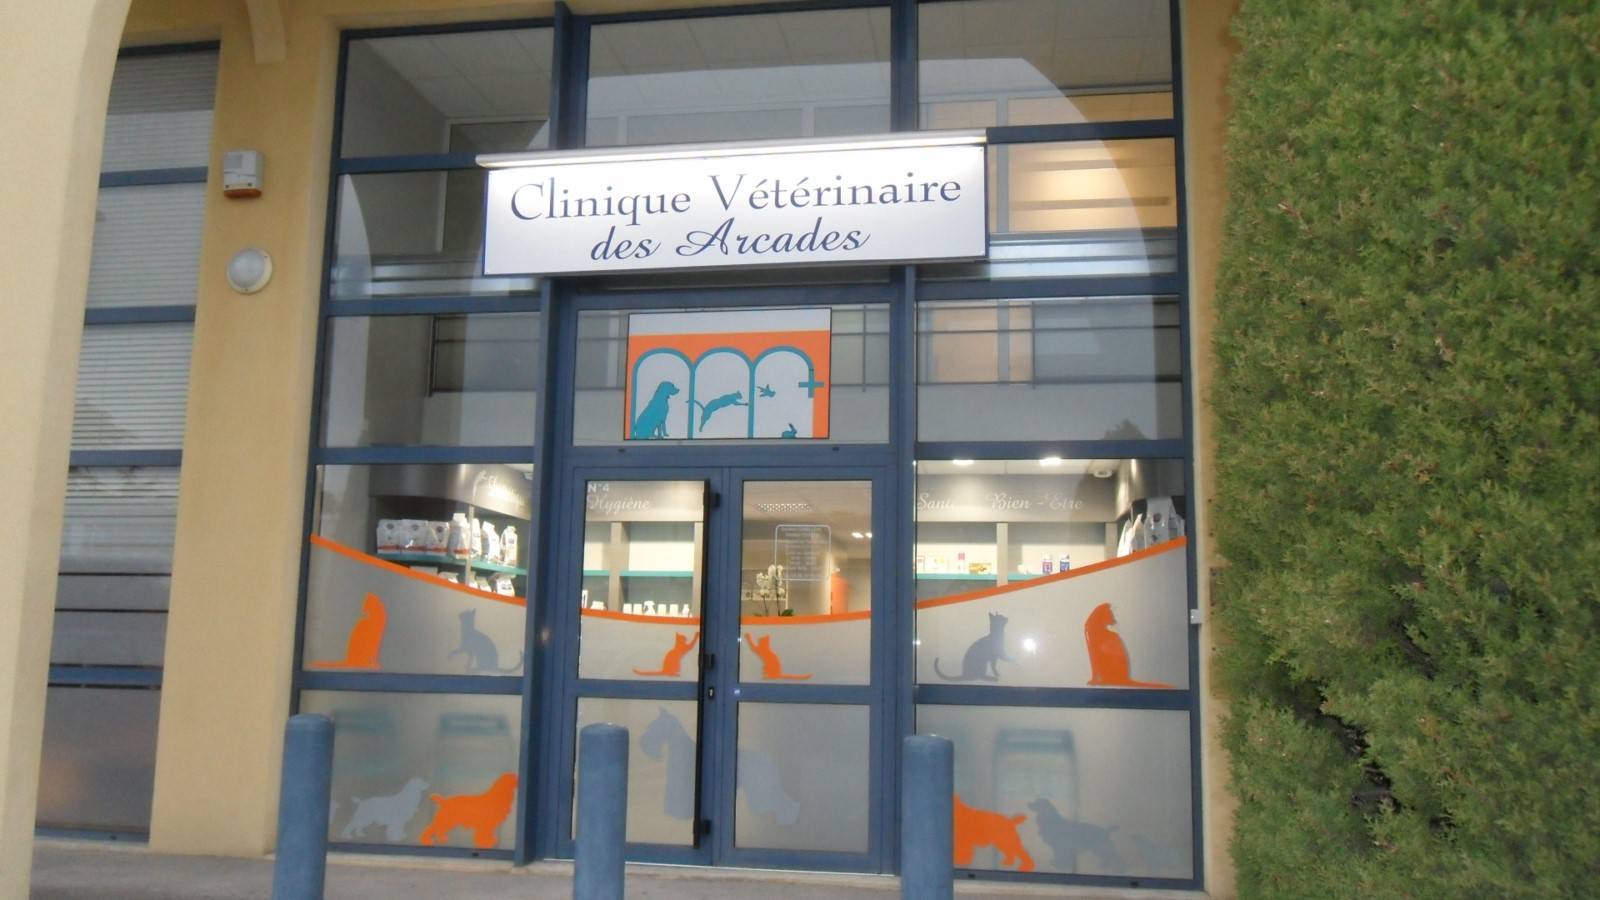 Clinique Vétérinaire La Ciotat